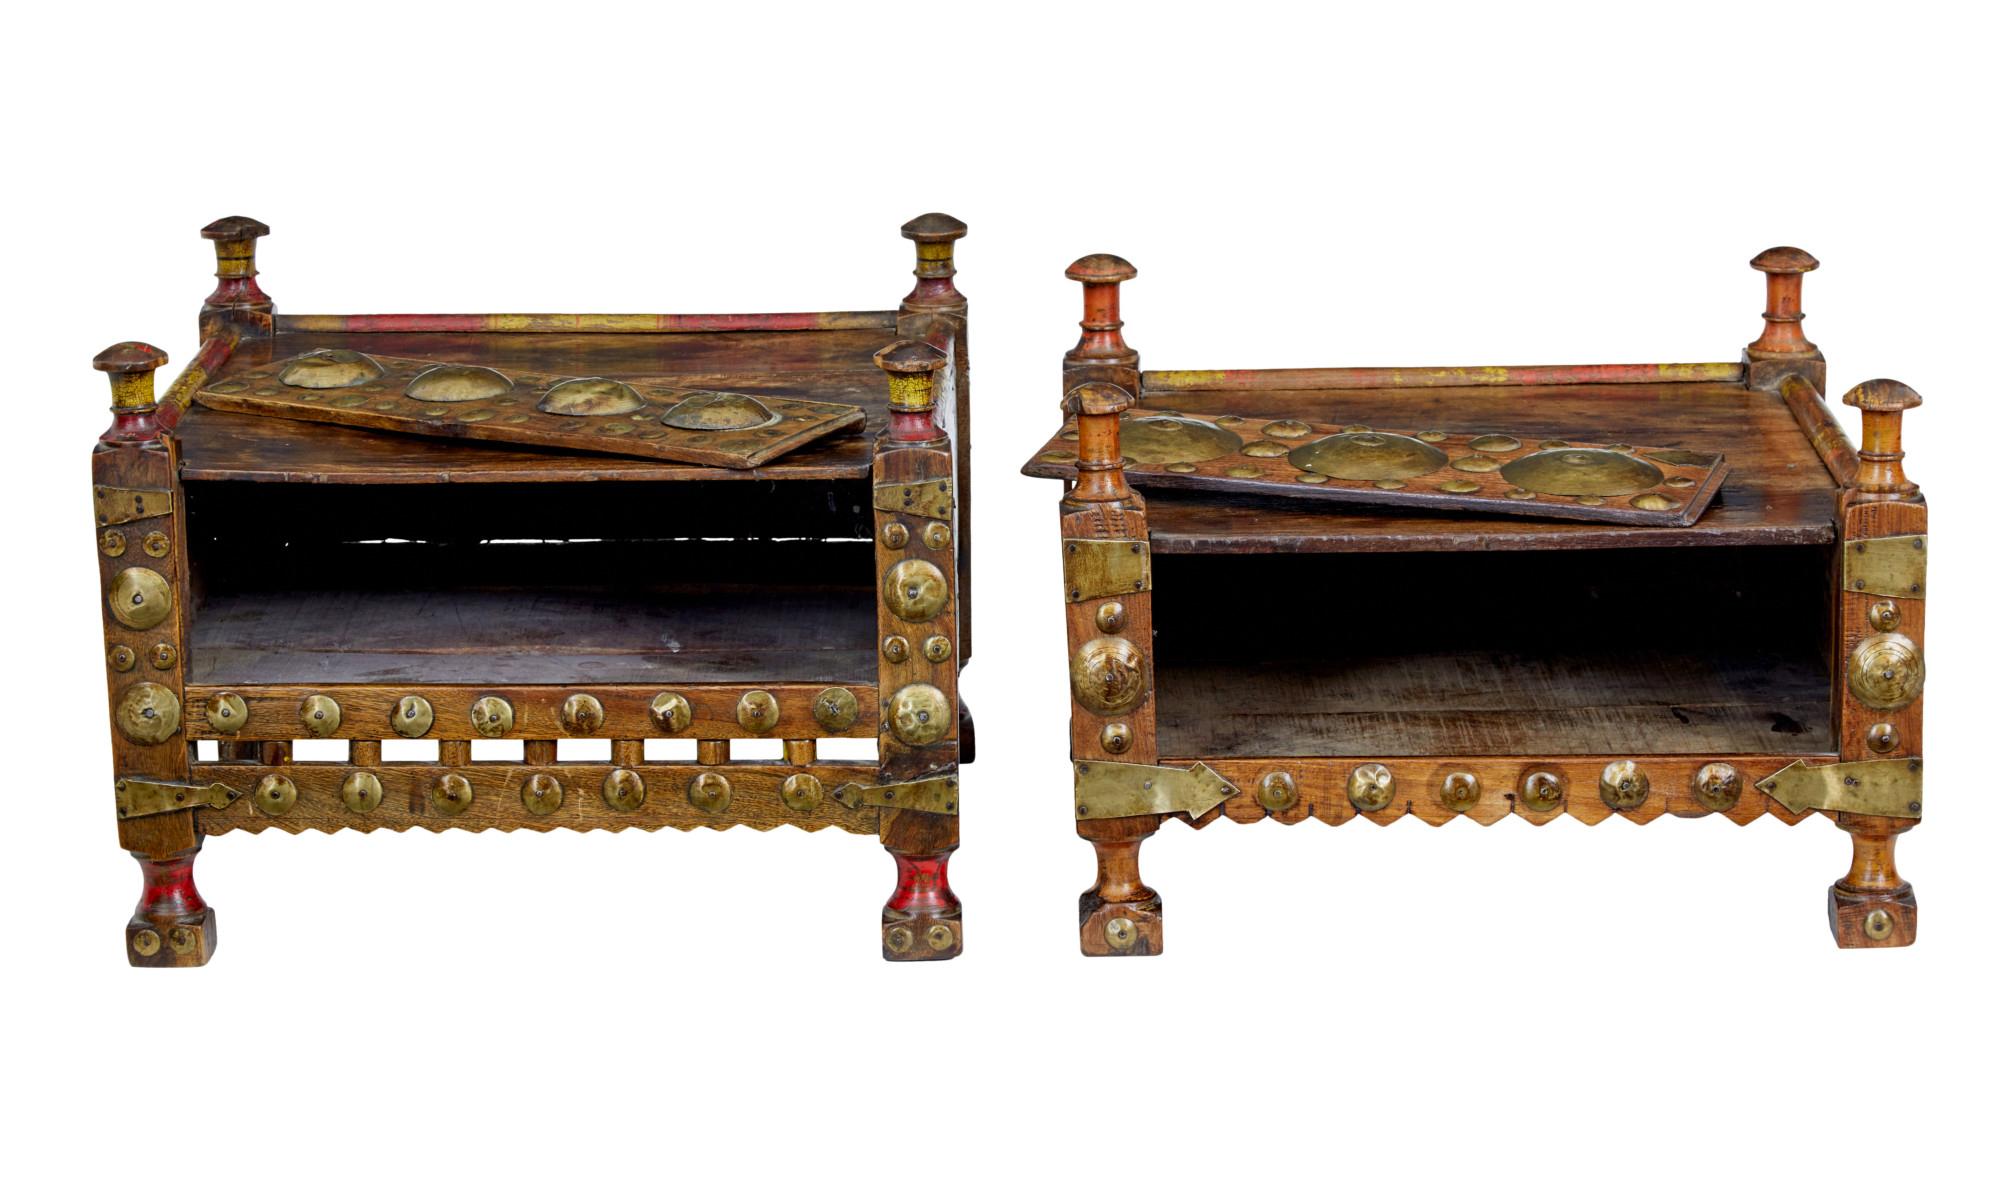 Nous avons ici deux tables de chevet marocaines similaires, datant de 1890.

Fabriqué à la main en bois dur.  Chaque coin est orné d'un épi de faîtage.  Le devant des tables est décoré de ronds en laiton.  Les façades coulissent vers le haut pour